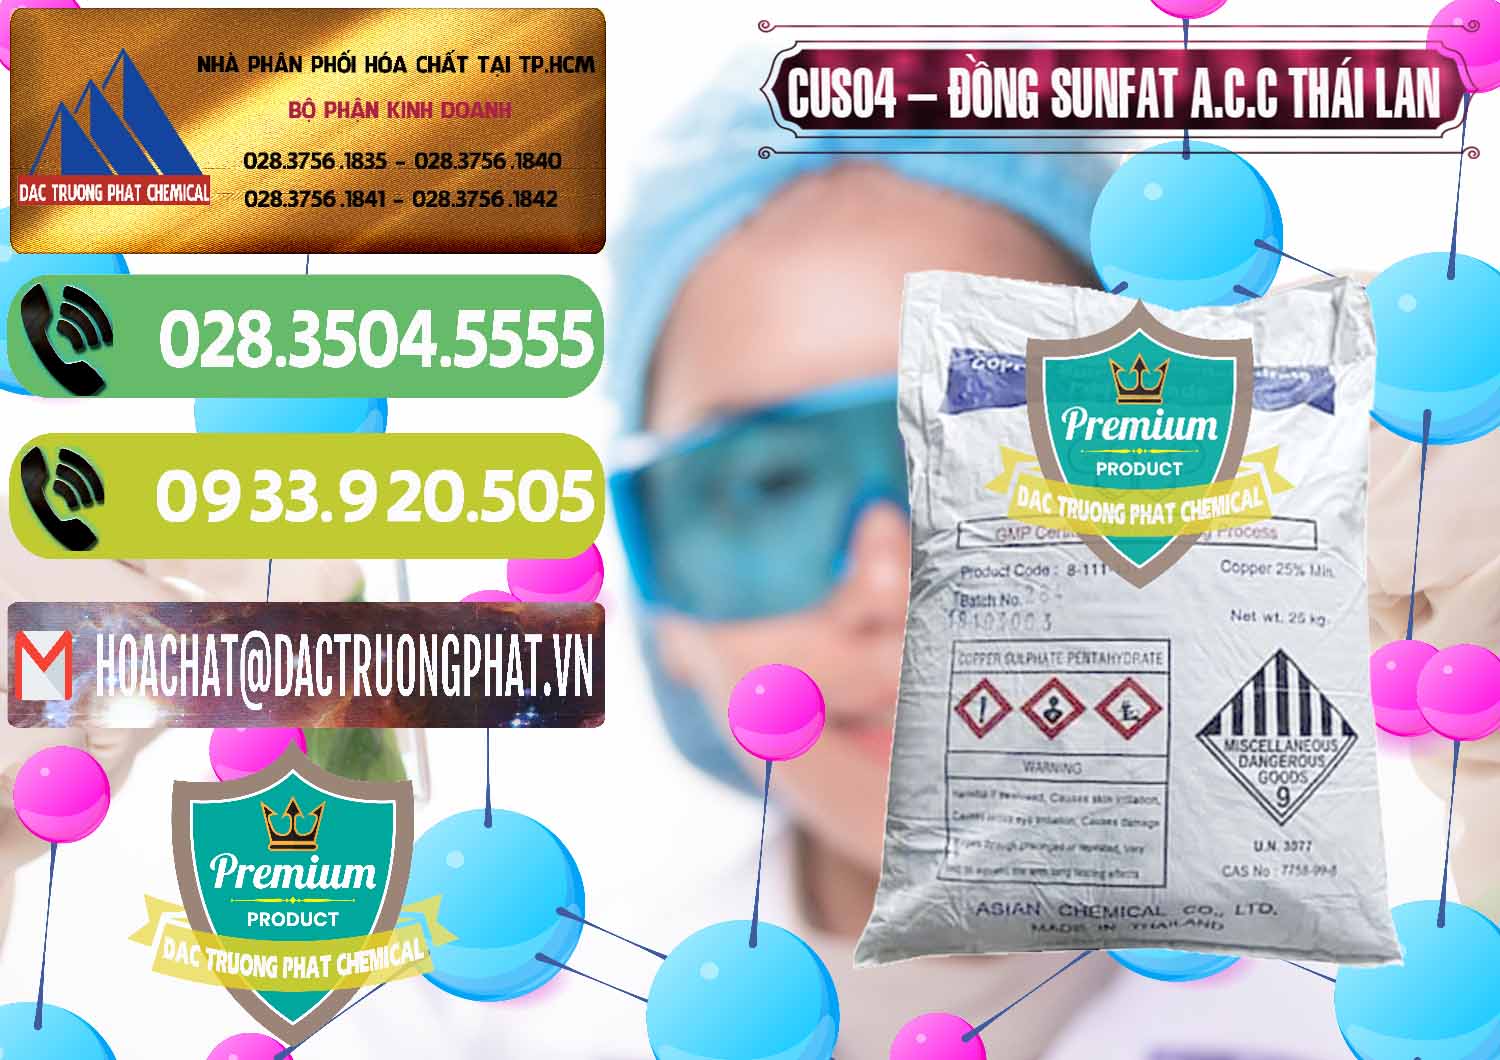 Cty chuyên bán ( cung cấp ) CuSO4 – Đồng Sunfat A.C.C Thái Lan - 0249 - Chuyên nhập khẩu ( phân phối ) hóa chất tại TP.HCM - hoachatmientay.vn